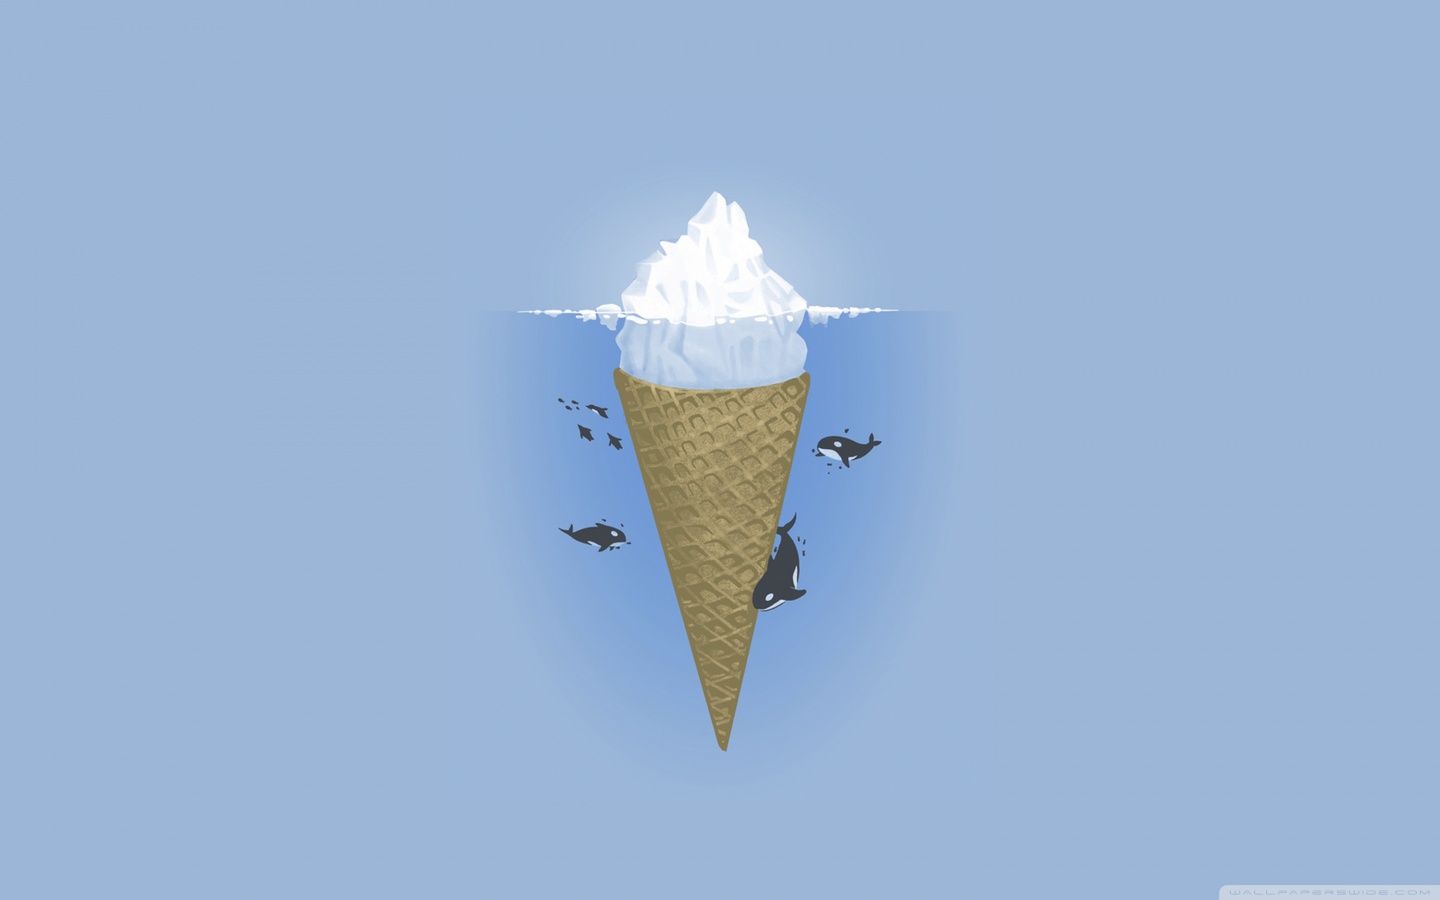 iceberg ice cream store days open